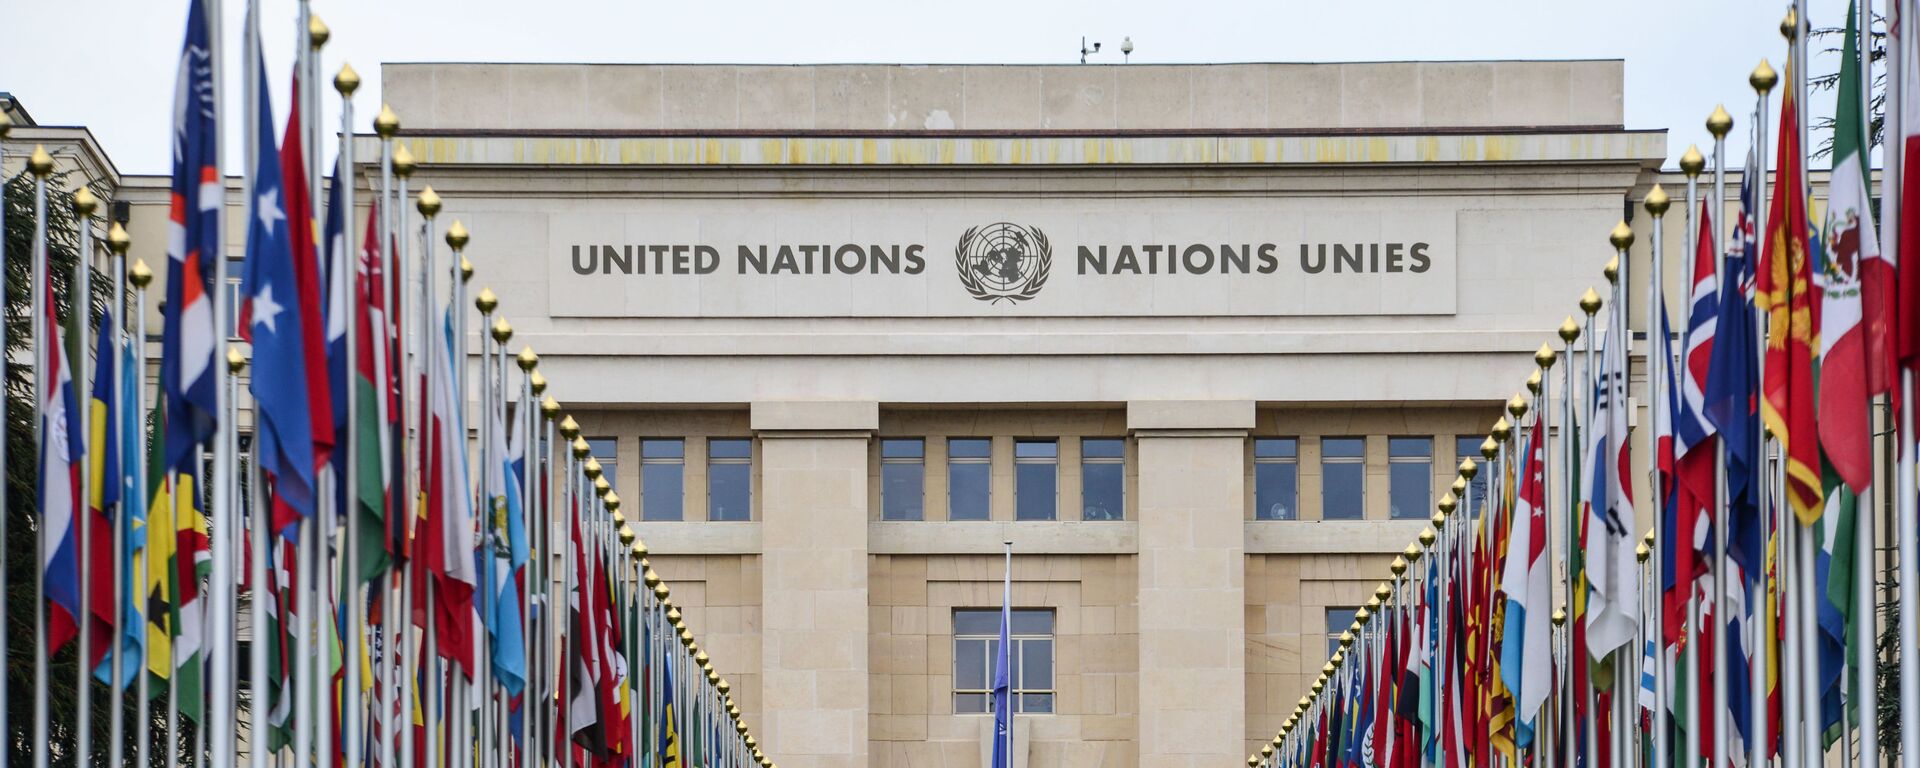 Аллея флагов возле здания Организации Объединённых Наций (ООН) в Женеве - Sputnik Azərbaycan, 1920, 16.09.2021